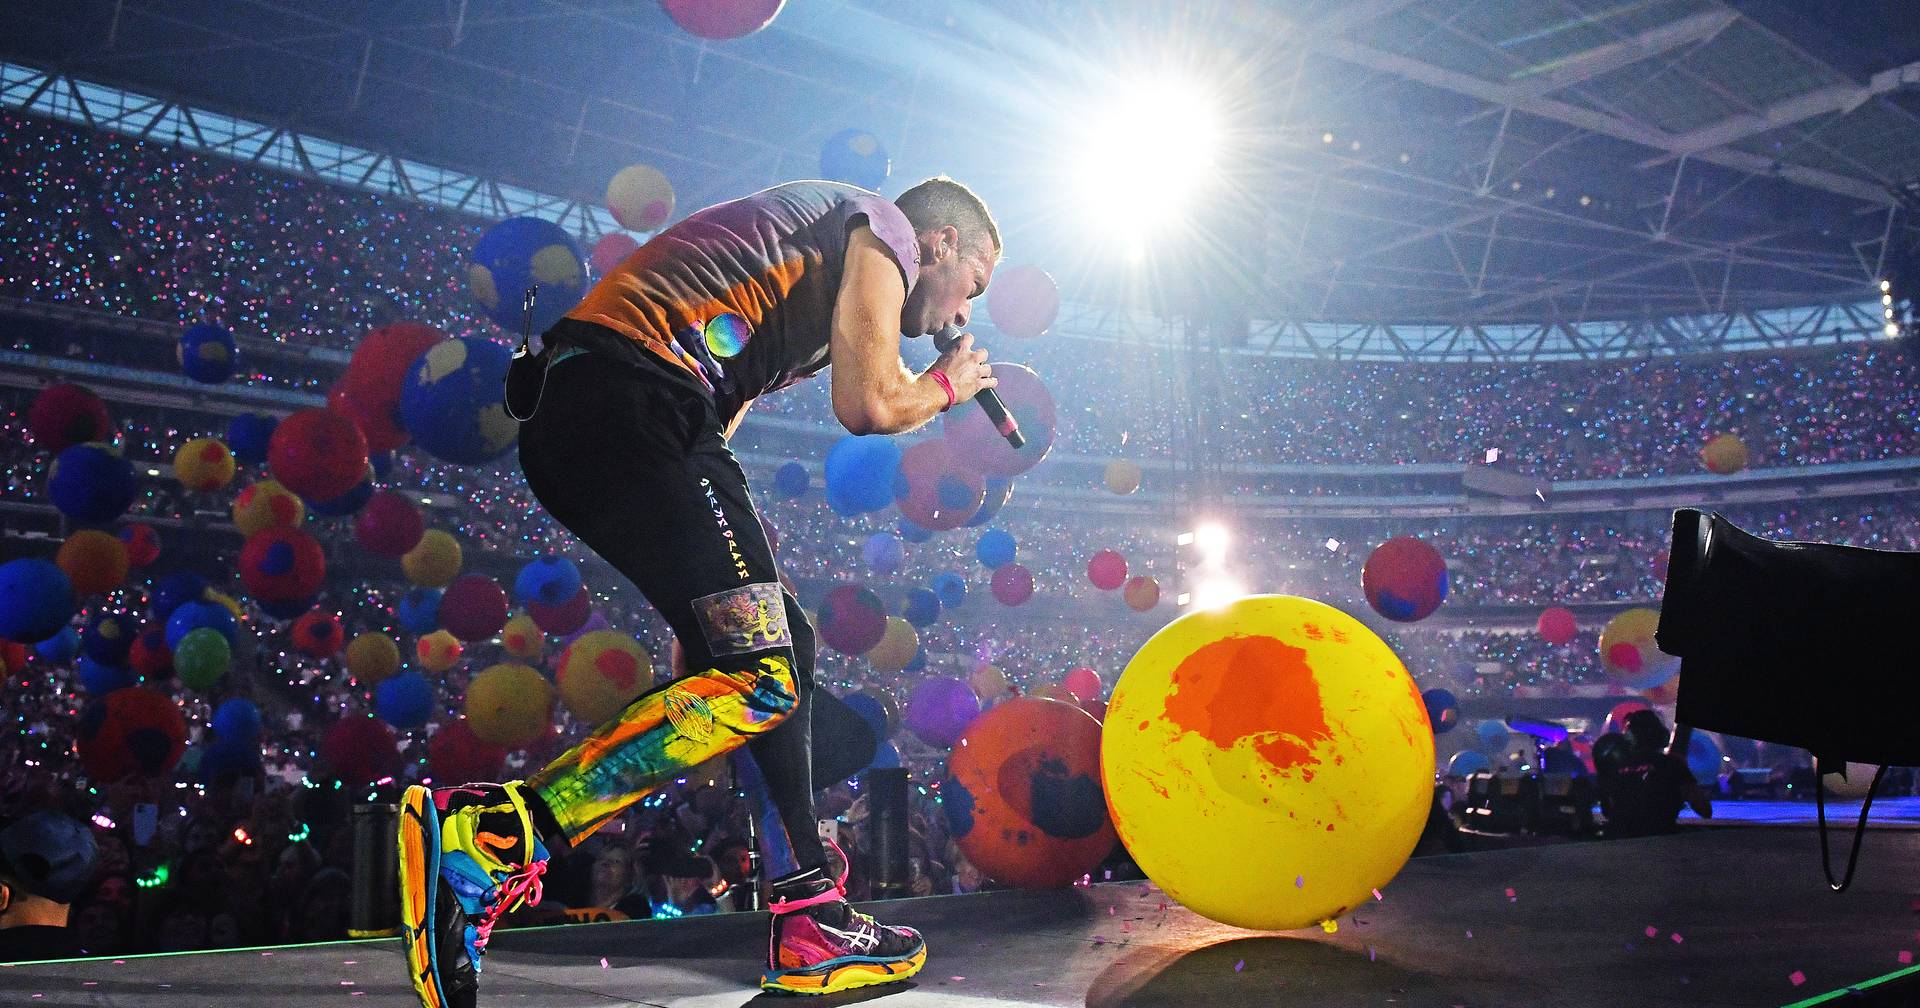 Reclamações contra bilheteiras disparam devido aos concertos de Coldplay